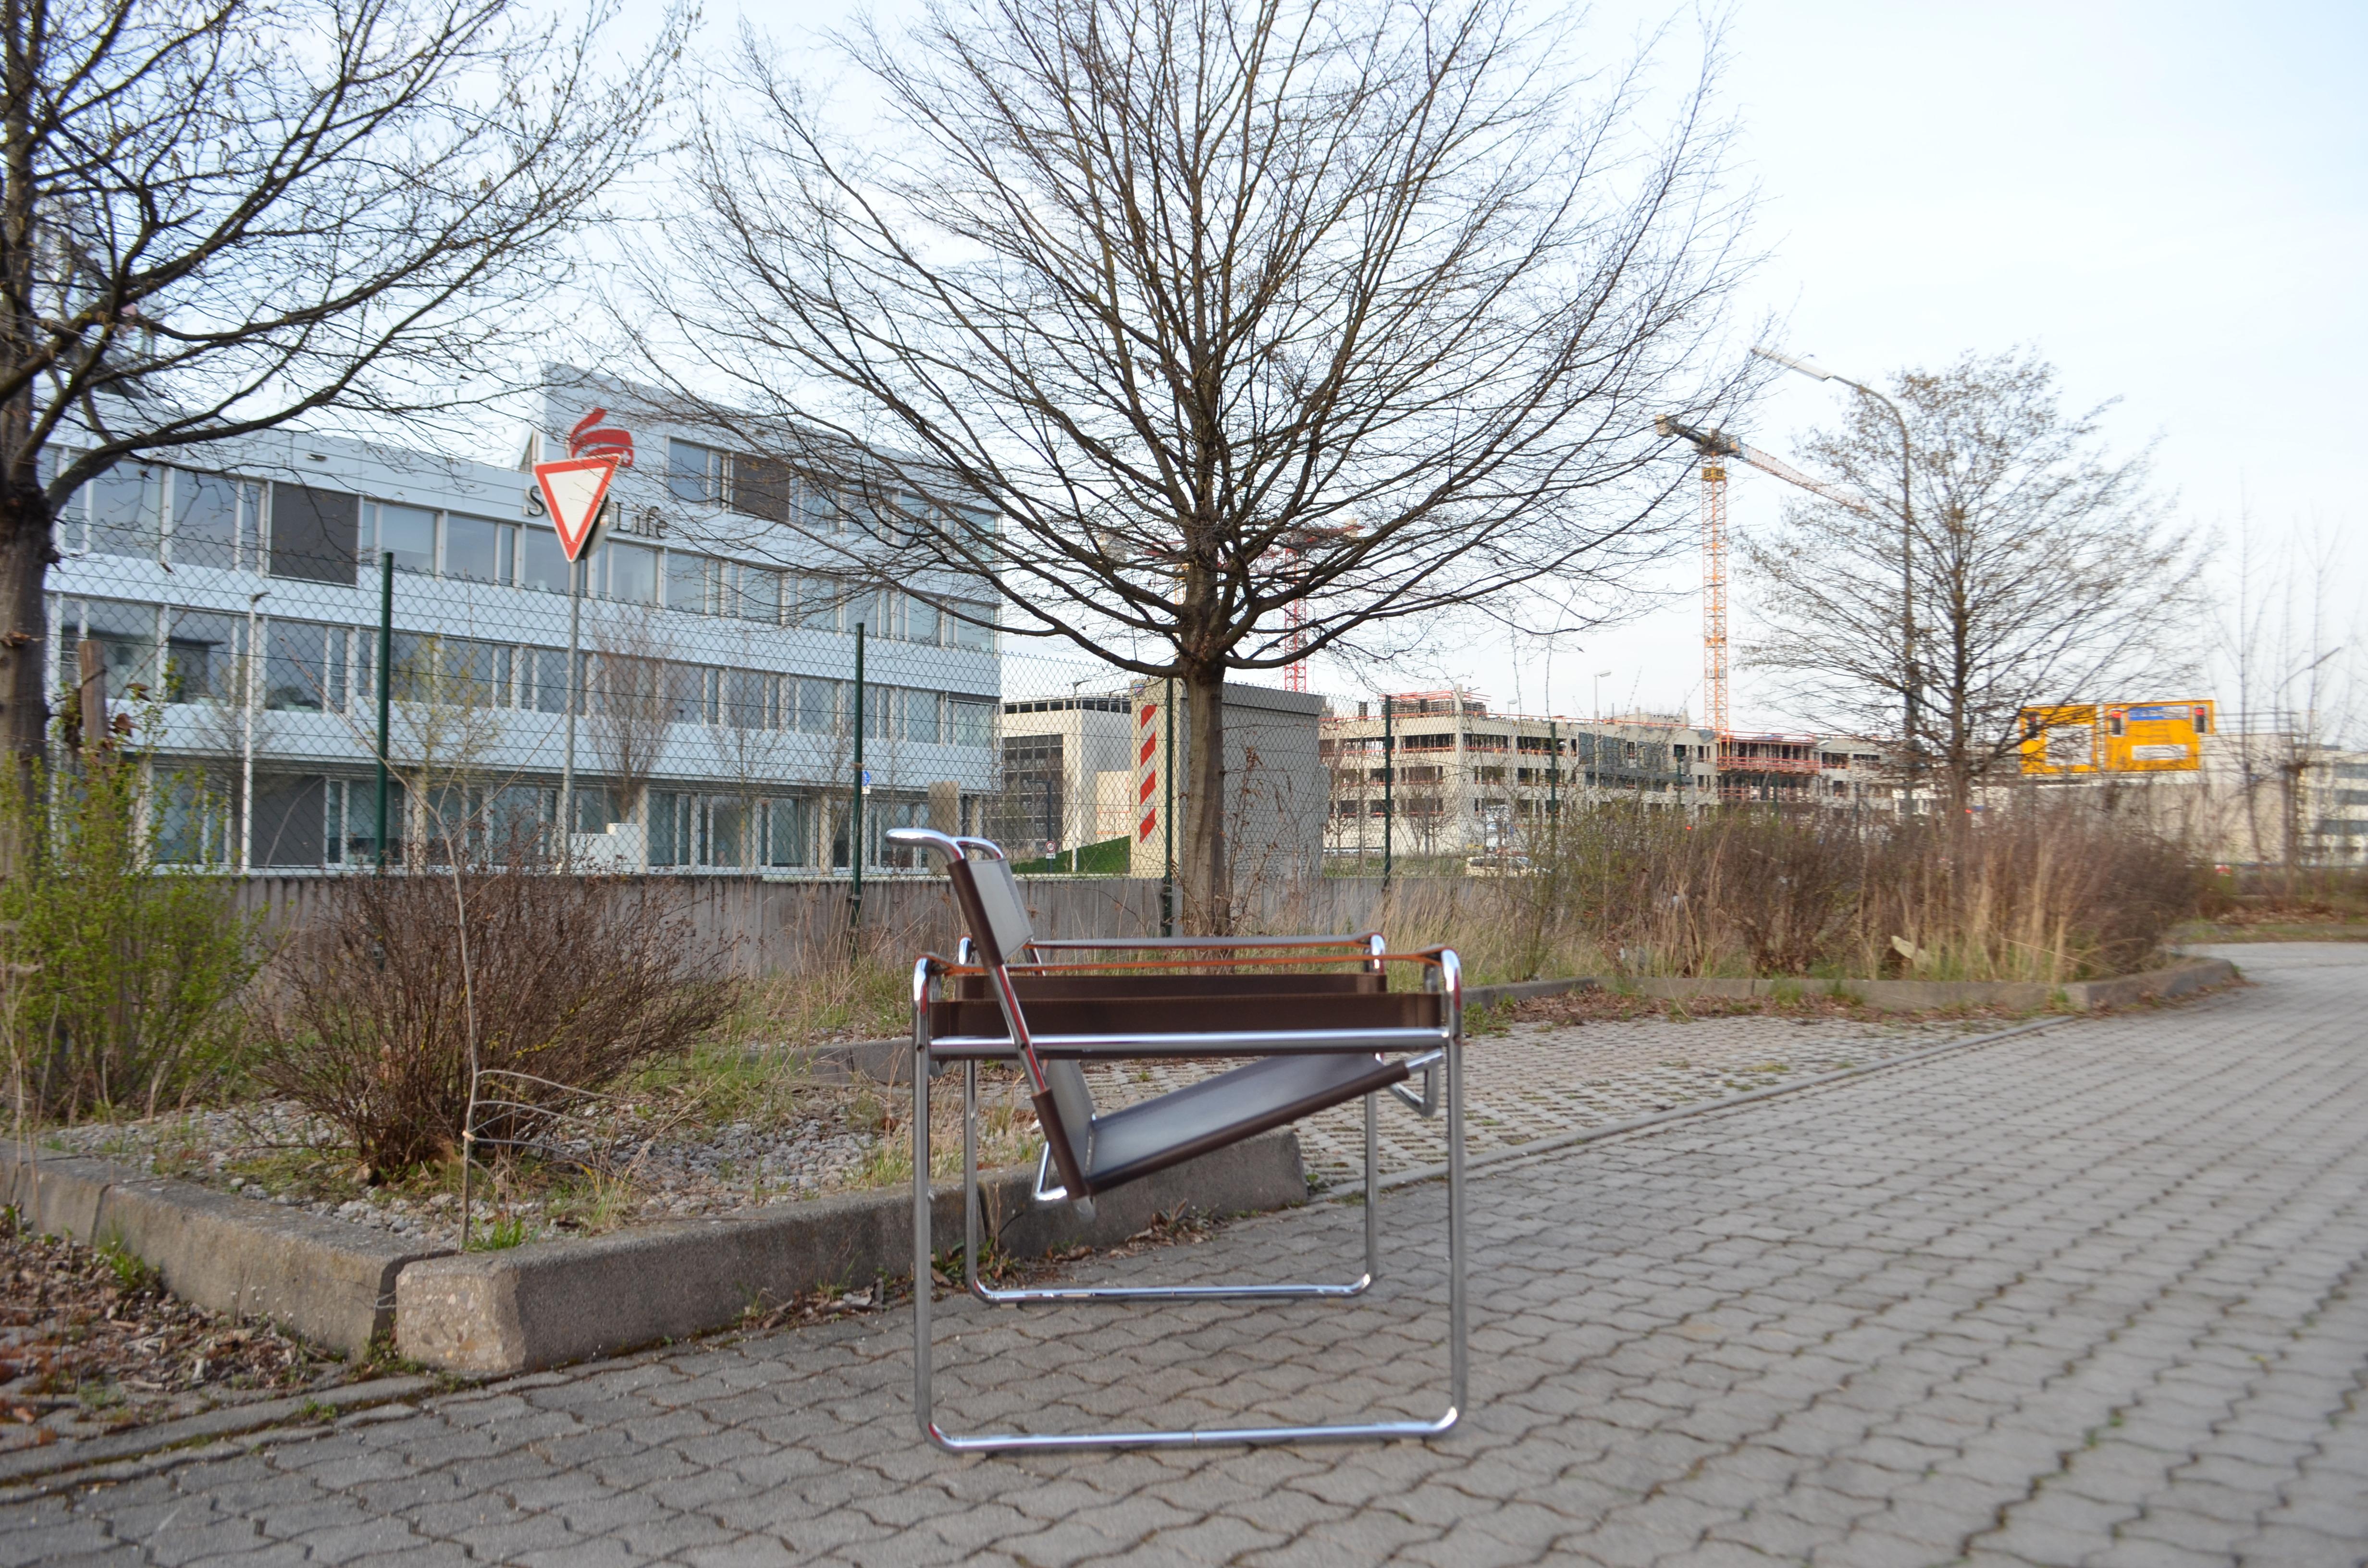 Cette chaise Wassily, en acier tubulaire chromé et cuir brun, a été conçue par Marcel Breuer et produite par Knoll International.
Production Knoll International avec le cachet de Wassily.
Cadre chromé en très bon état.
Le cuir de selle marron est